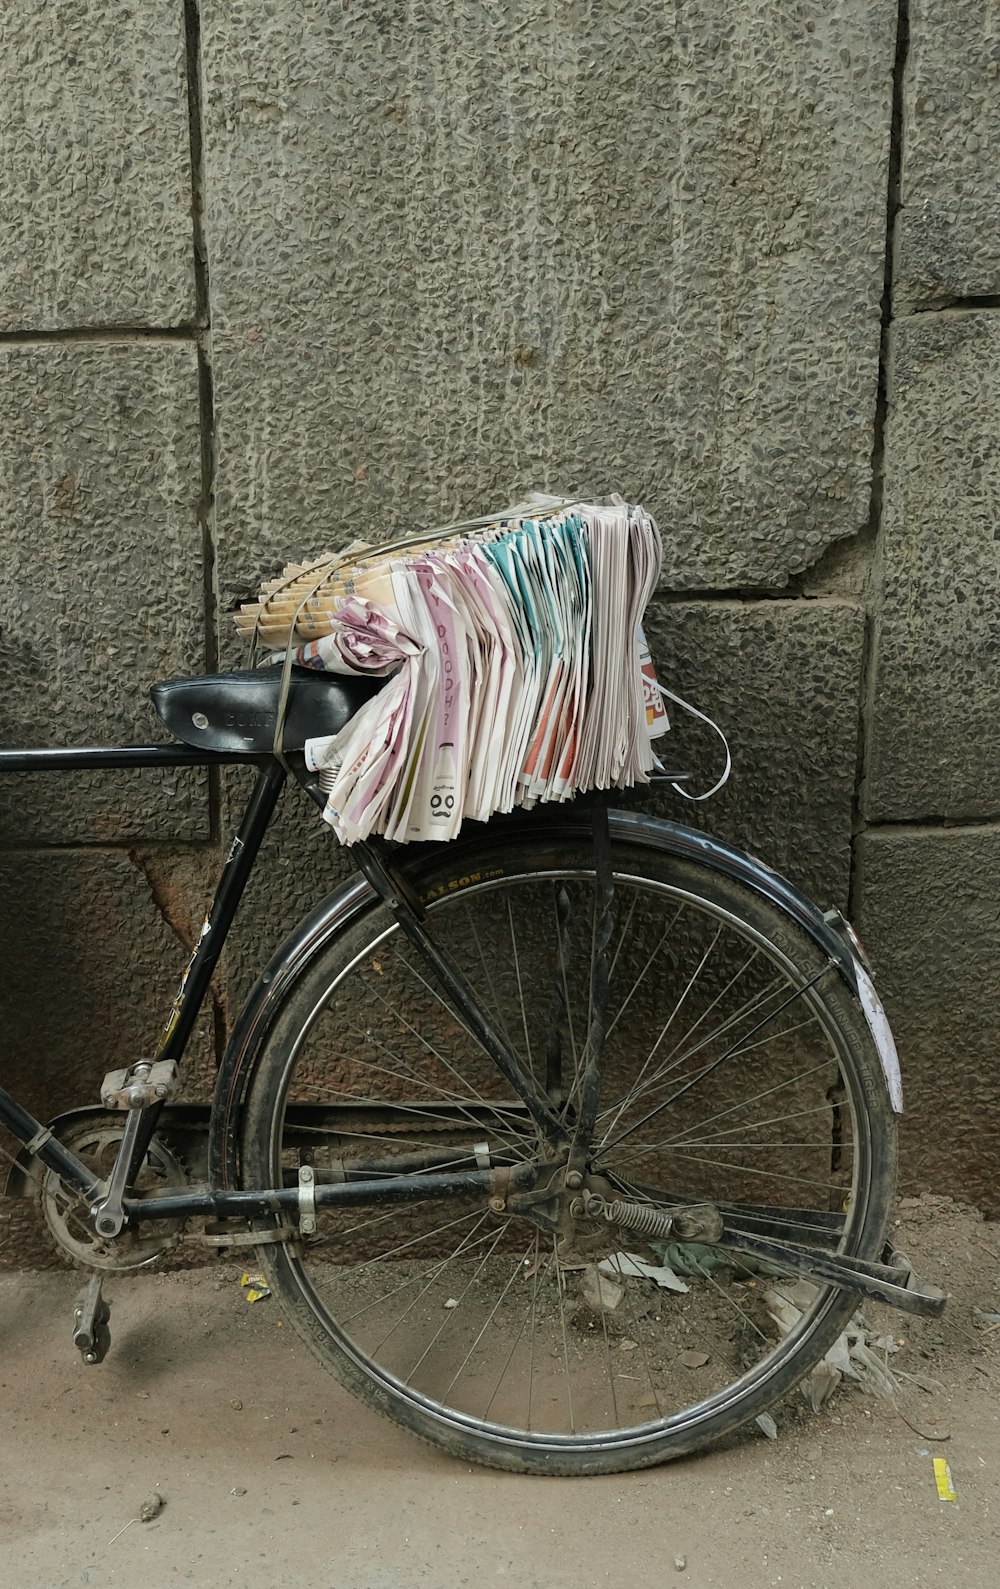 bicicleta preta com tecido branco e rosa sobre ela